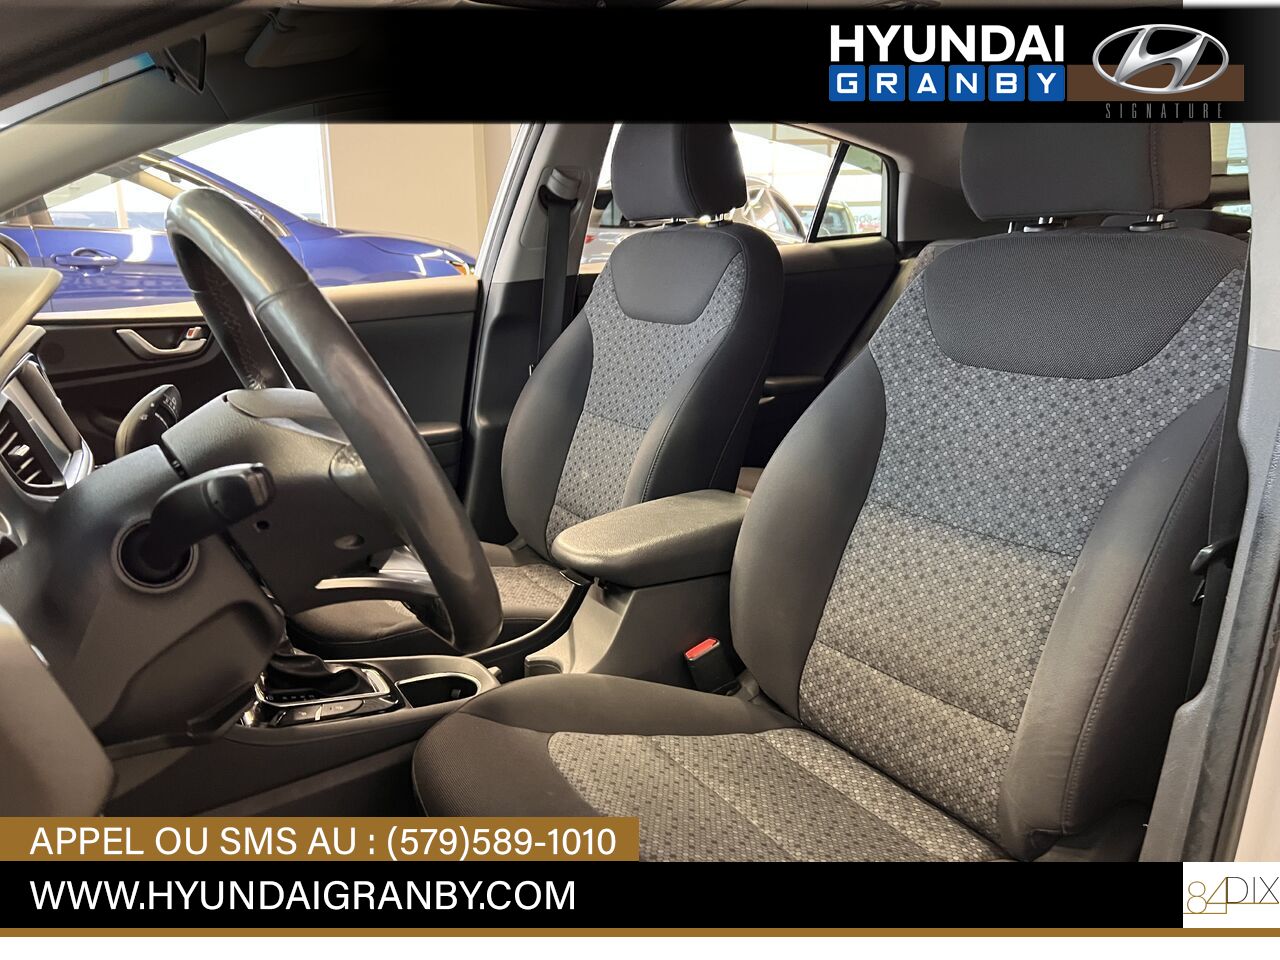 2017 Hyundai Ioniq hybride Granby - photo #10